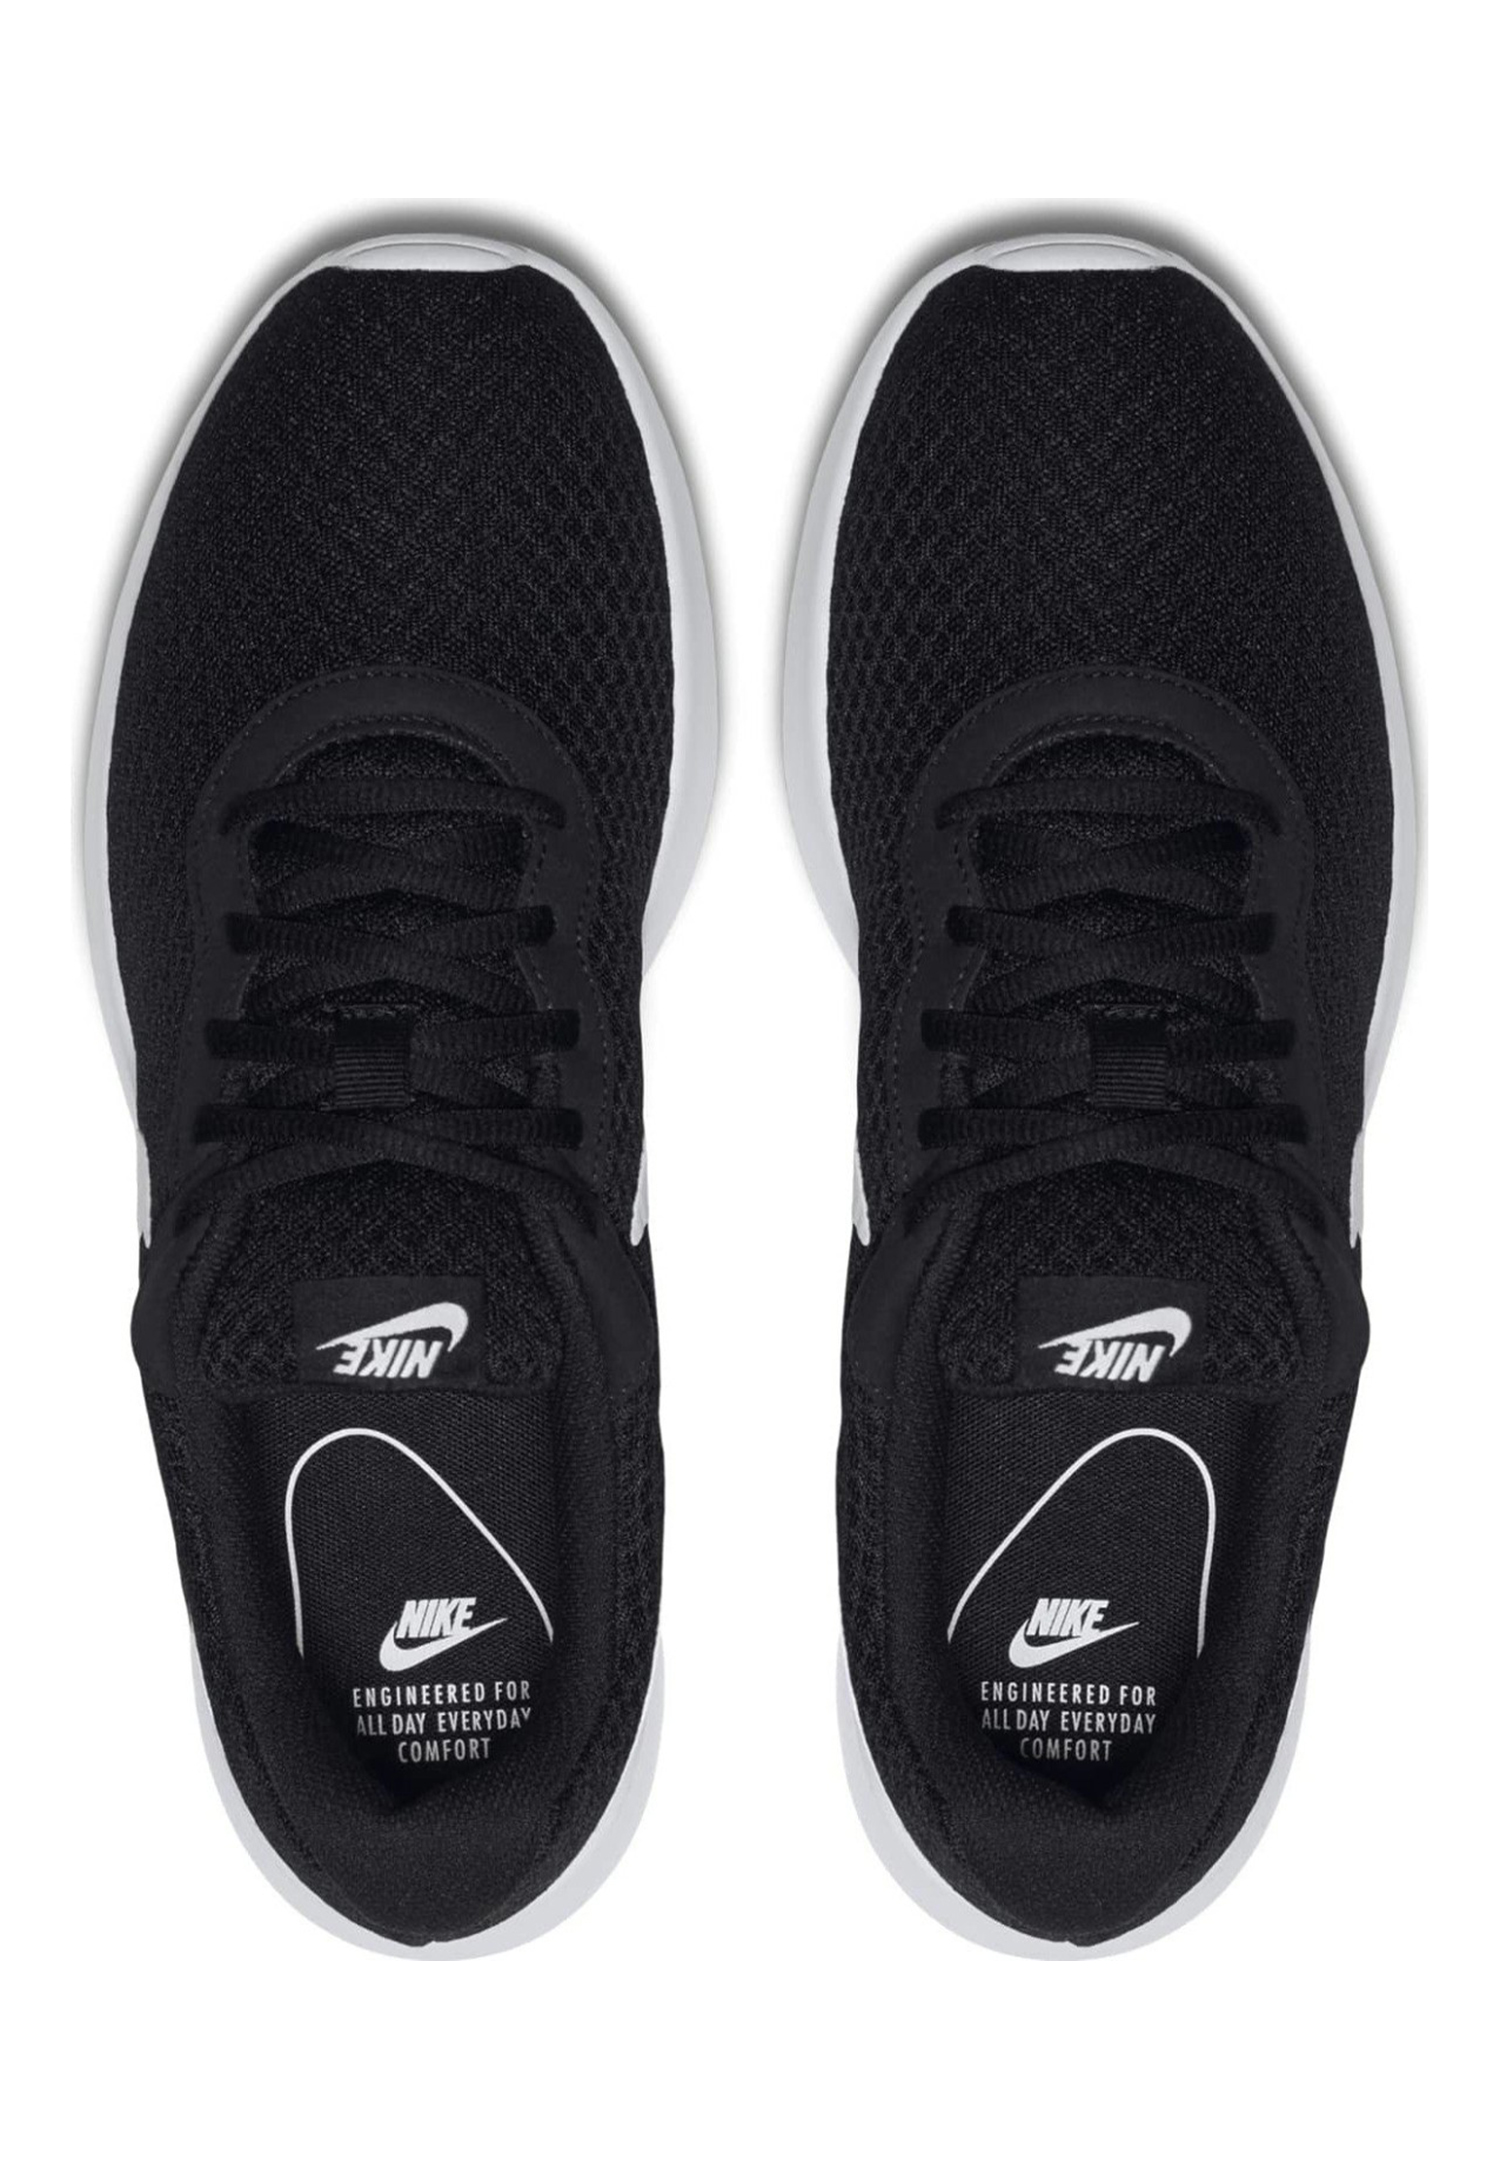 Nike TANJUN Laufschuhe Herren MEN Sneaker Sportschuhe 812654 011 schwarz